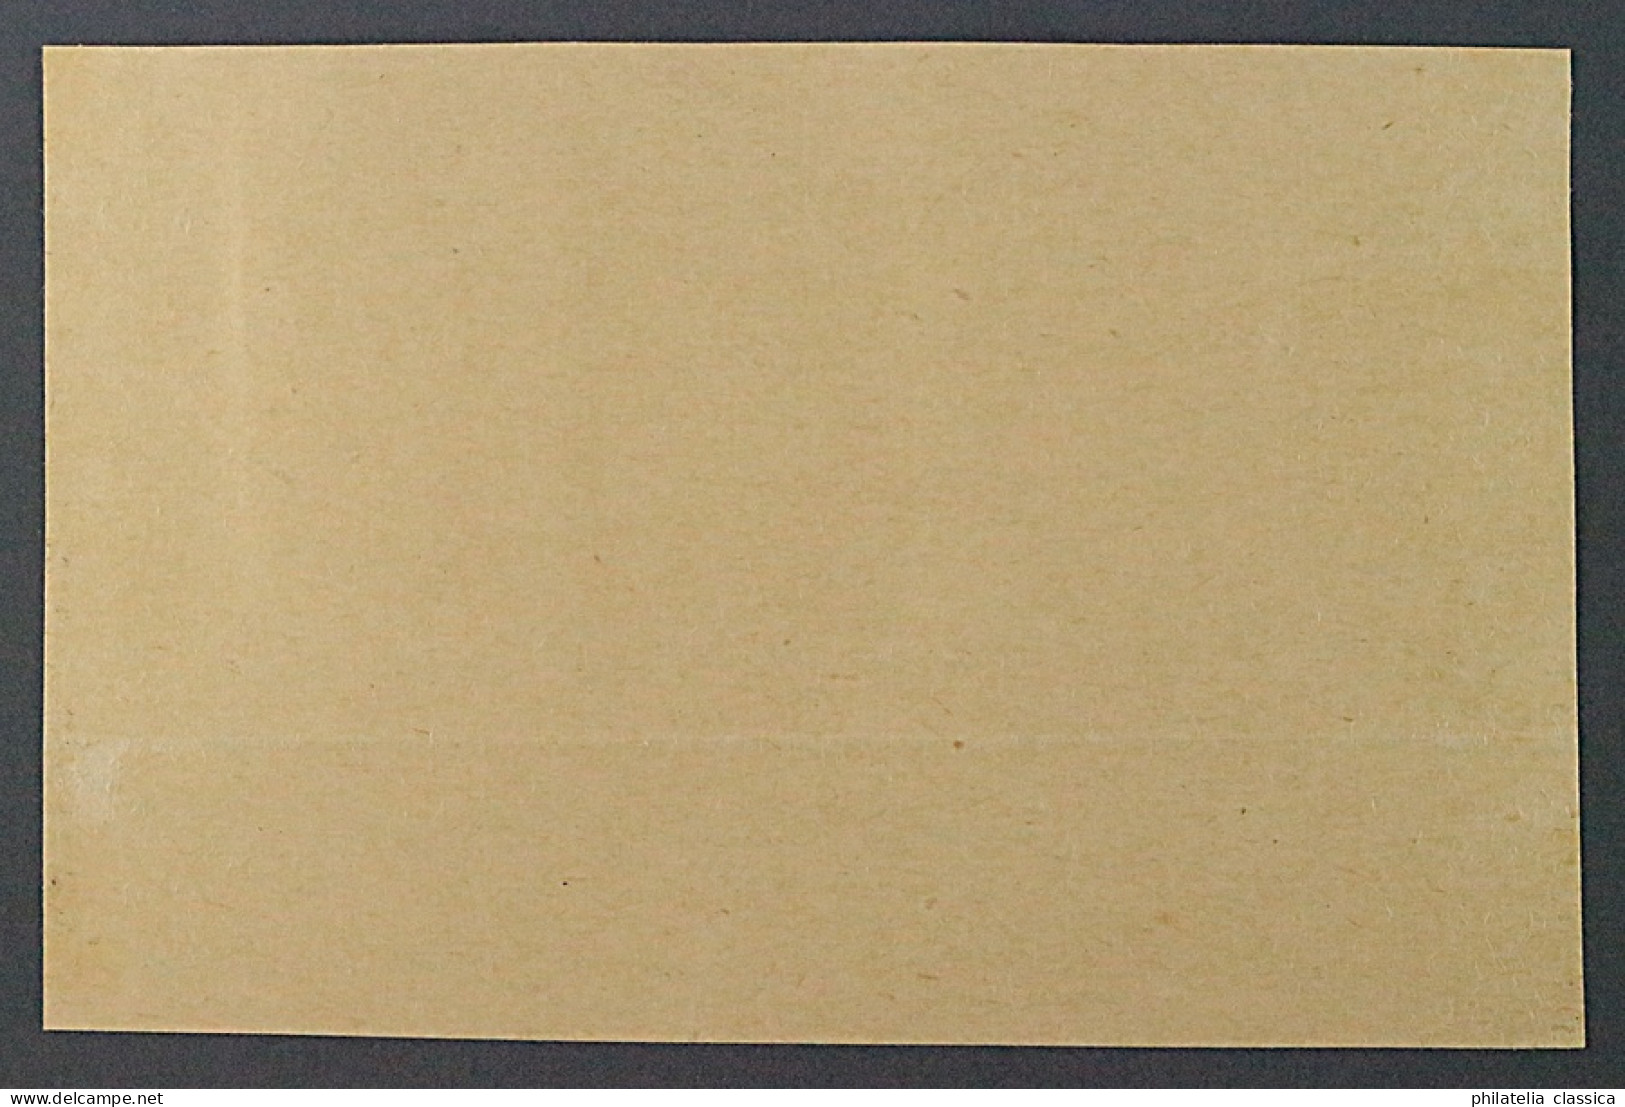 RASEINIAI 8+8 K, 80 K. Aufdruck KOPFSTEHEND, Briefstück Mit Fotoattest, 4600,-€ - Occupation 1938-45